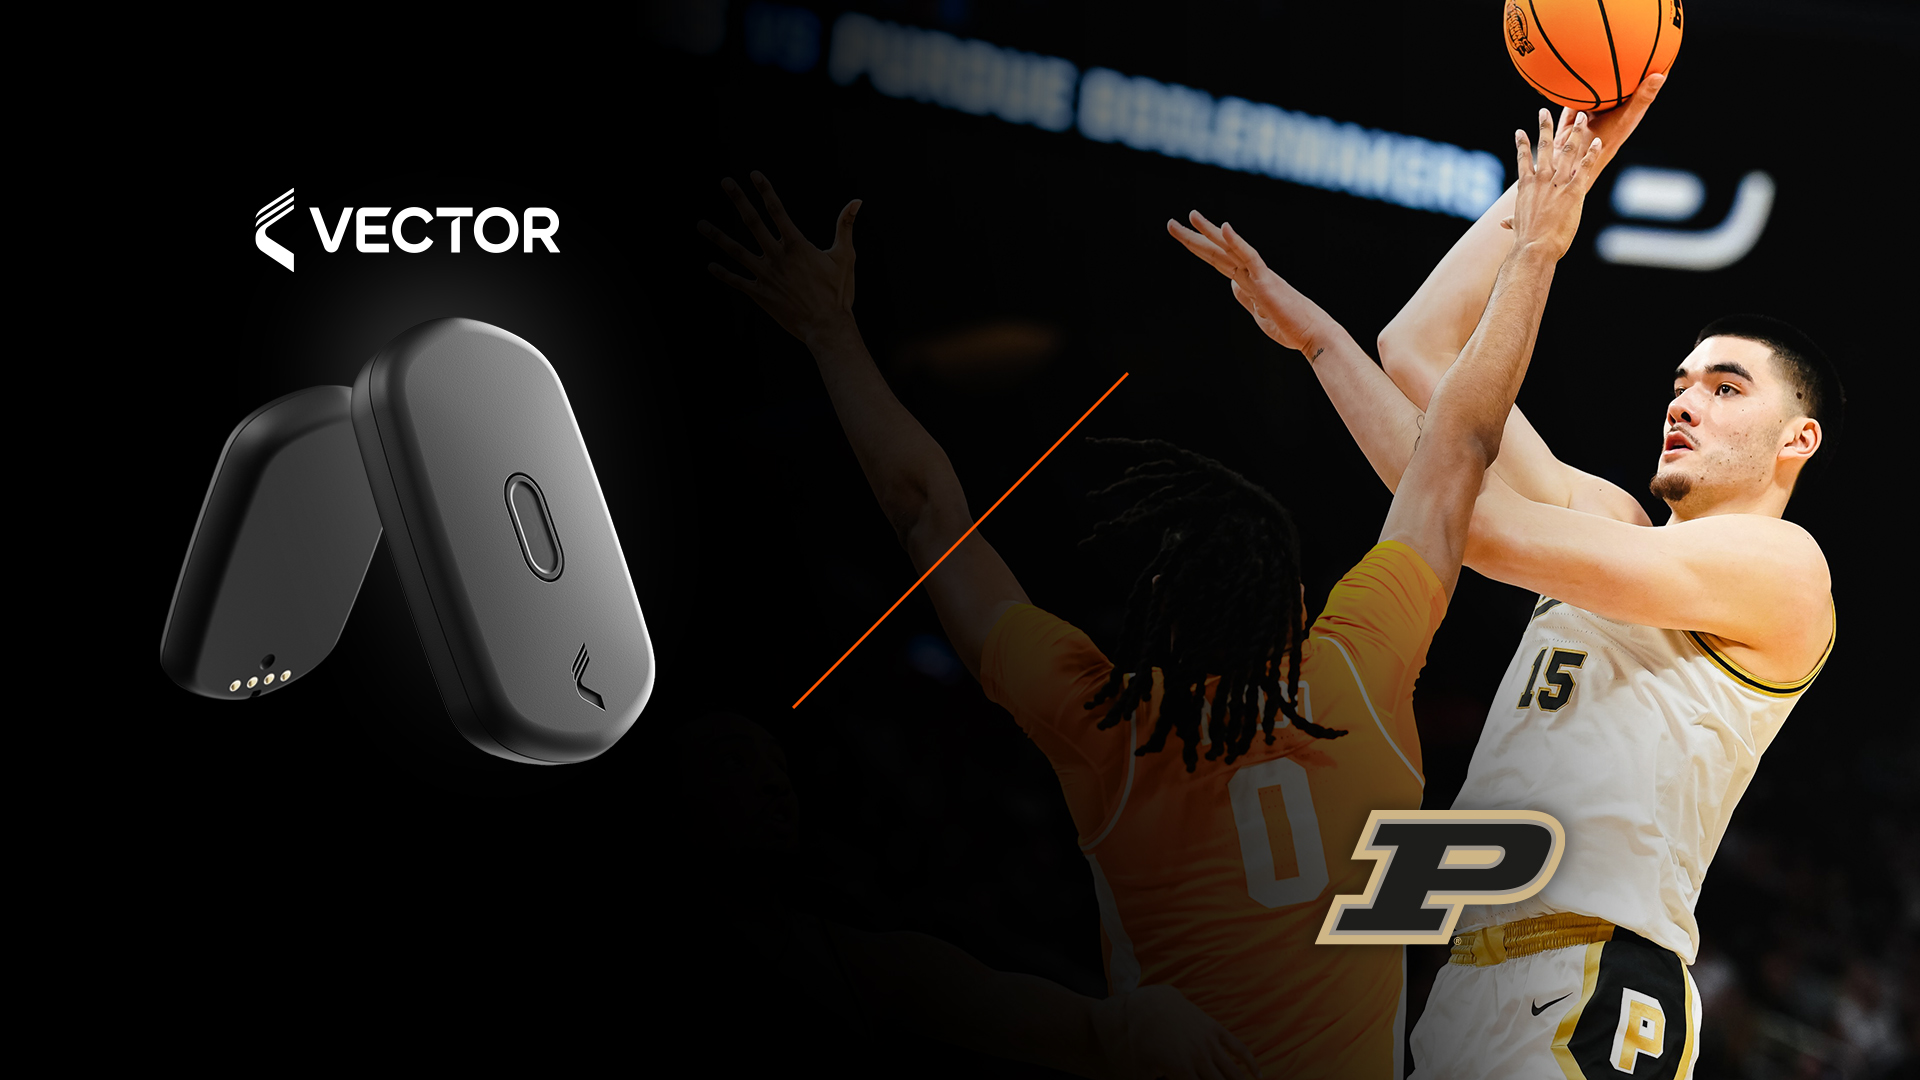 Graphique promotionnel d'un appareil de surveillance sportive Vector T7 avec un joueur de basket-ball Purdue en action, prêt à tirer le ballon.